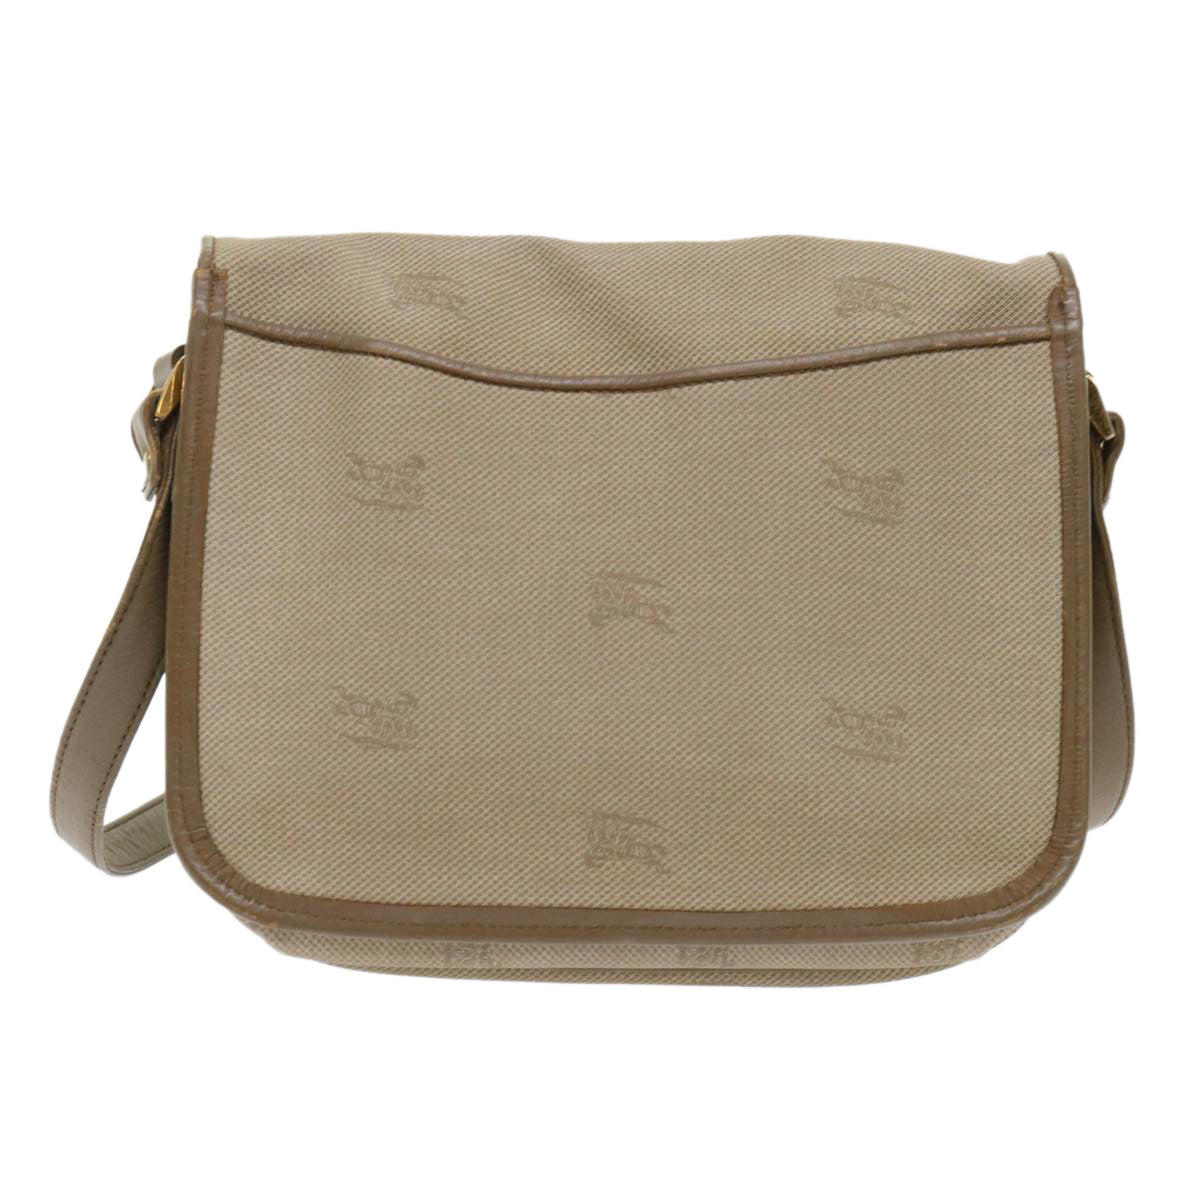 Burberrys Shoulder Bag PVC Leather Beige Auth bs6453 - 0